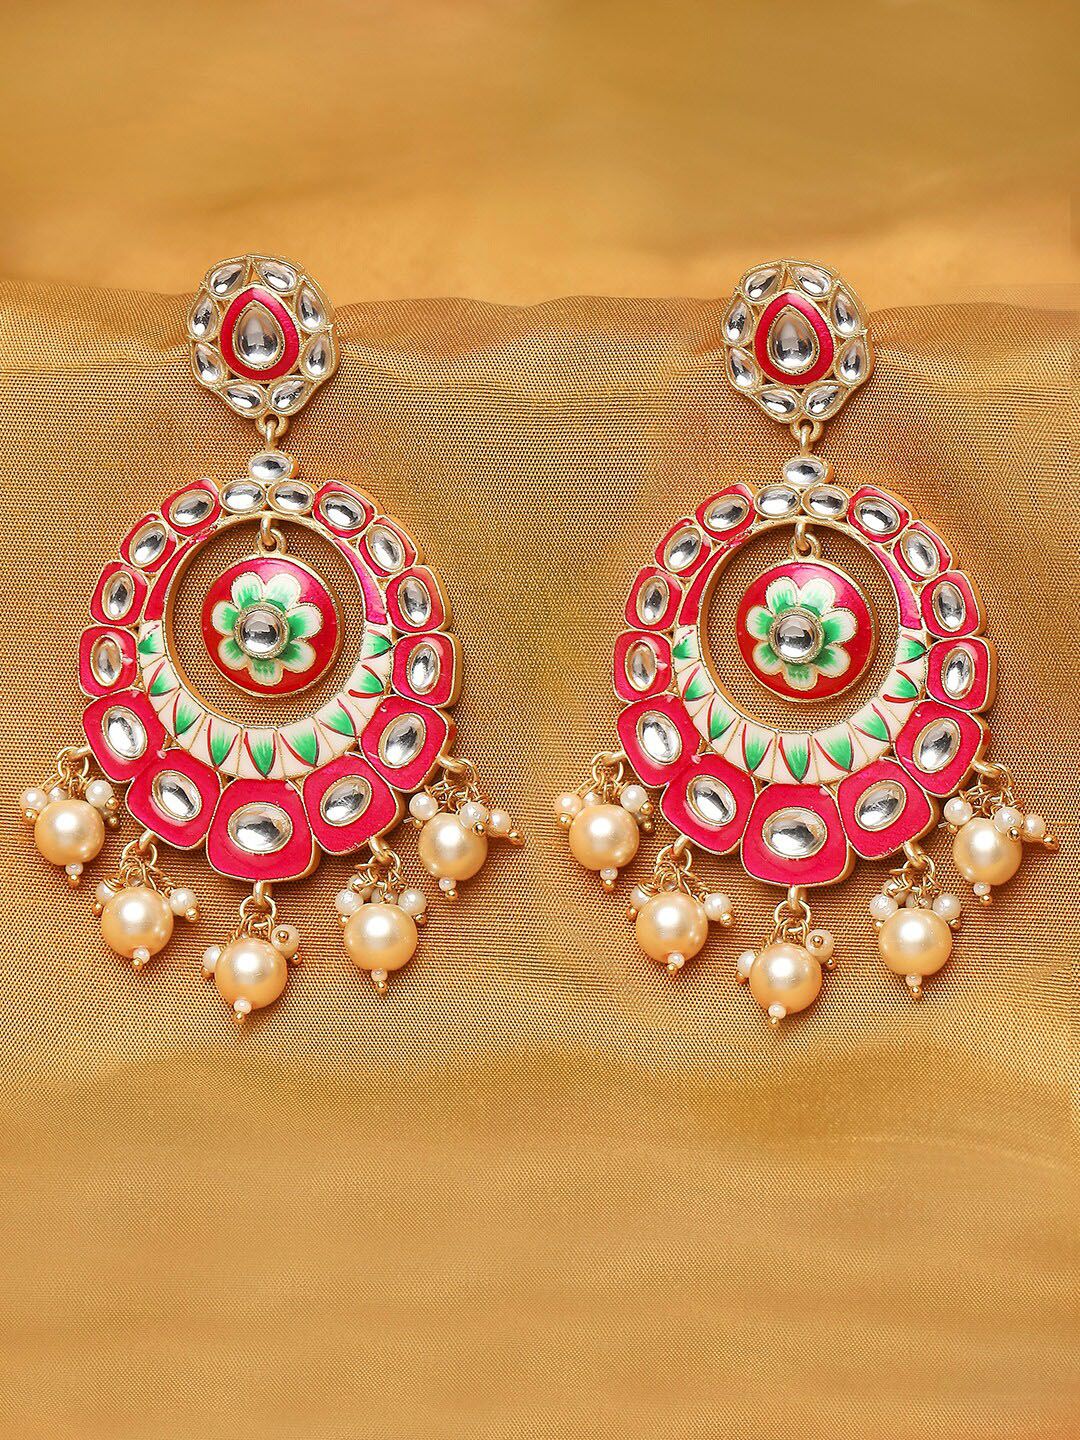 OOMPH Pink & Green Enamelled Floral Chandbalis Earrings Price in India